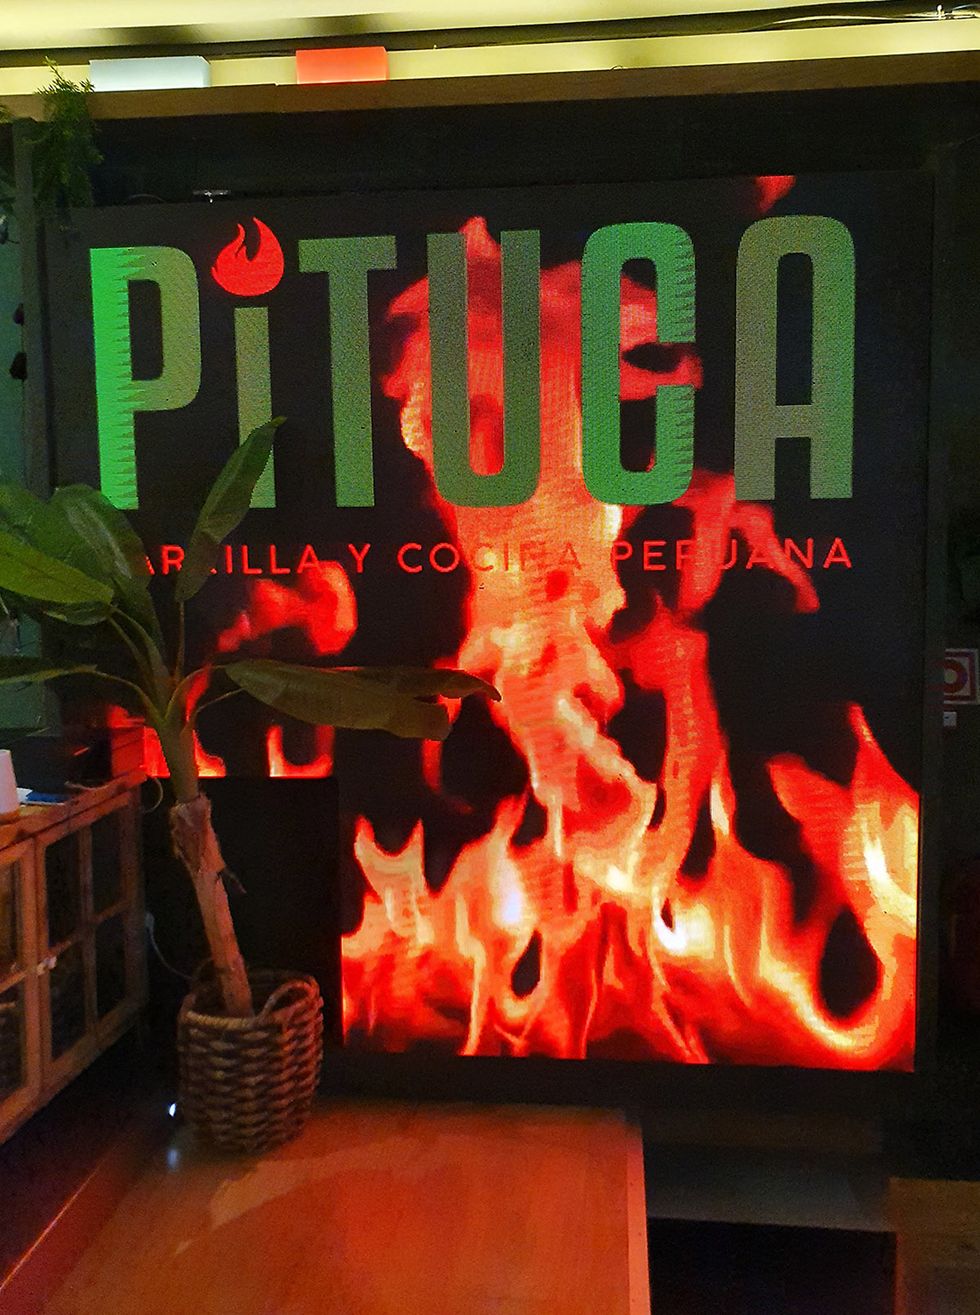 restaurante peruano pituca, madrid